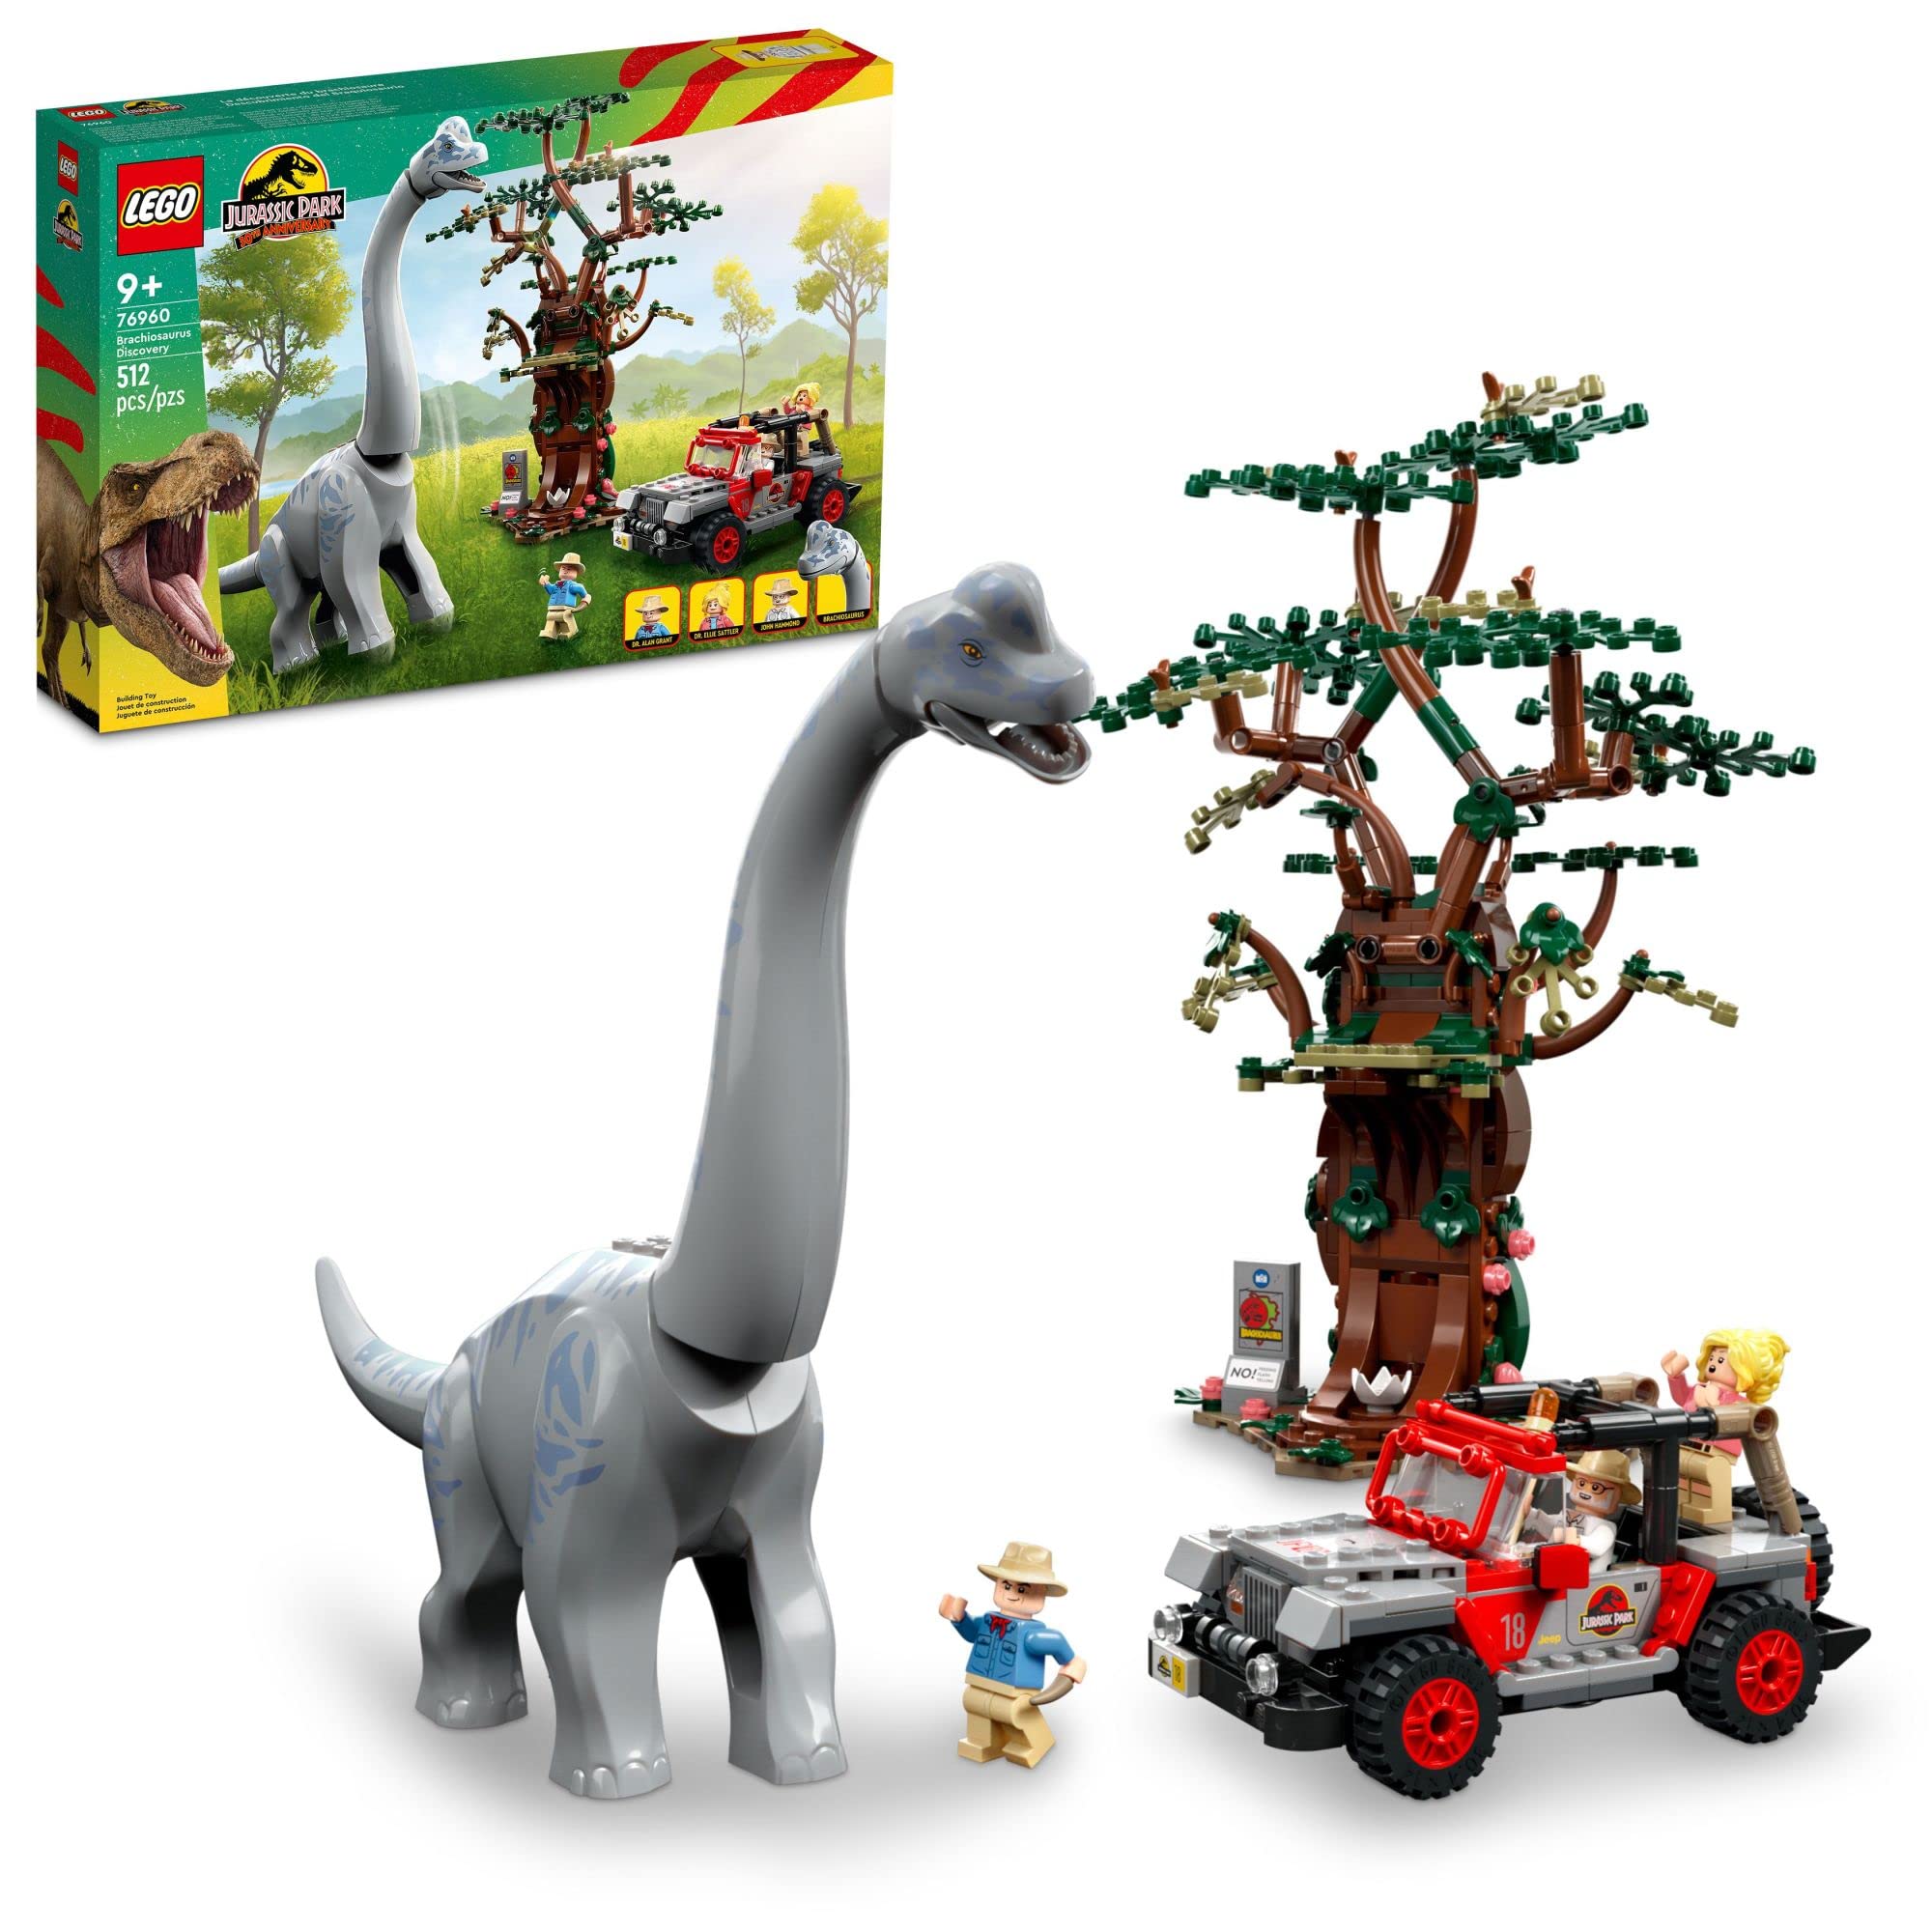  LEGO Jurassic World Brachiosaurus Discovery 76960 Jurassic Park Brinquedo de dinossauro do 30º aniversário; Apresentando uma grande figura de dinossauro e um brinquedo de carro Jeep Wrangler construído...